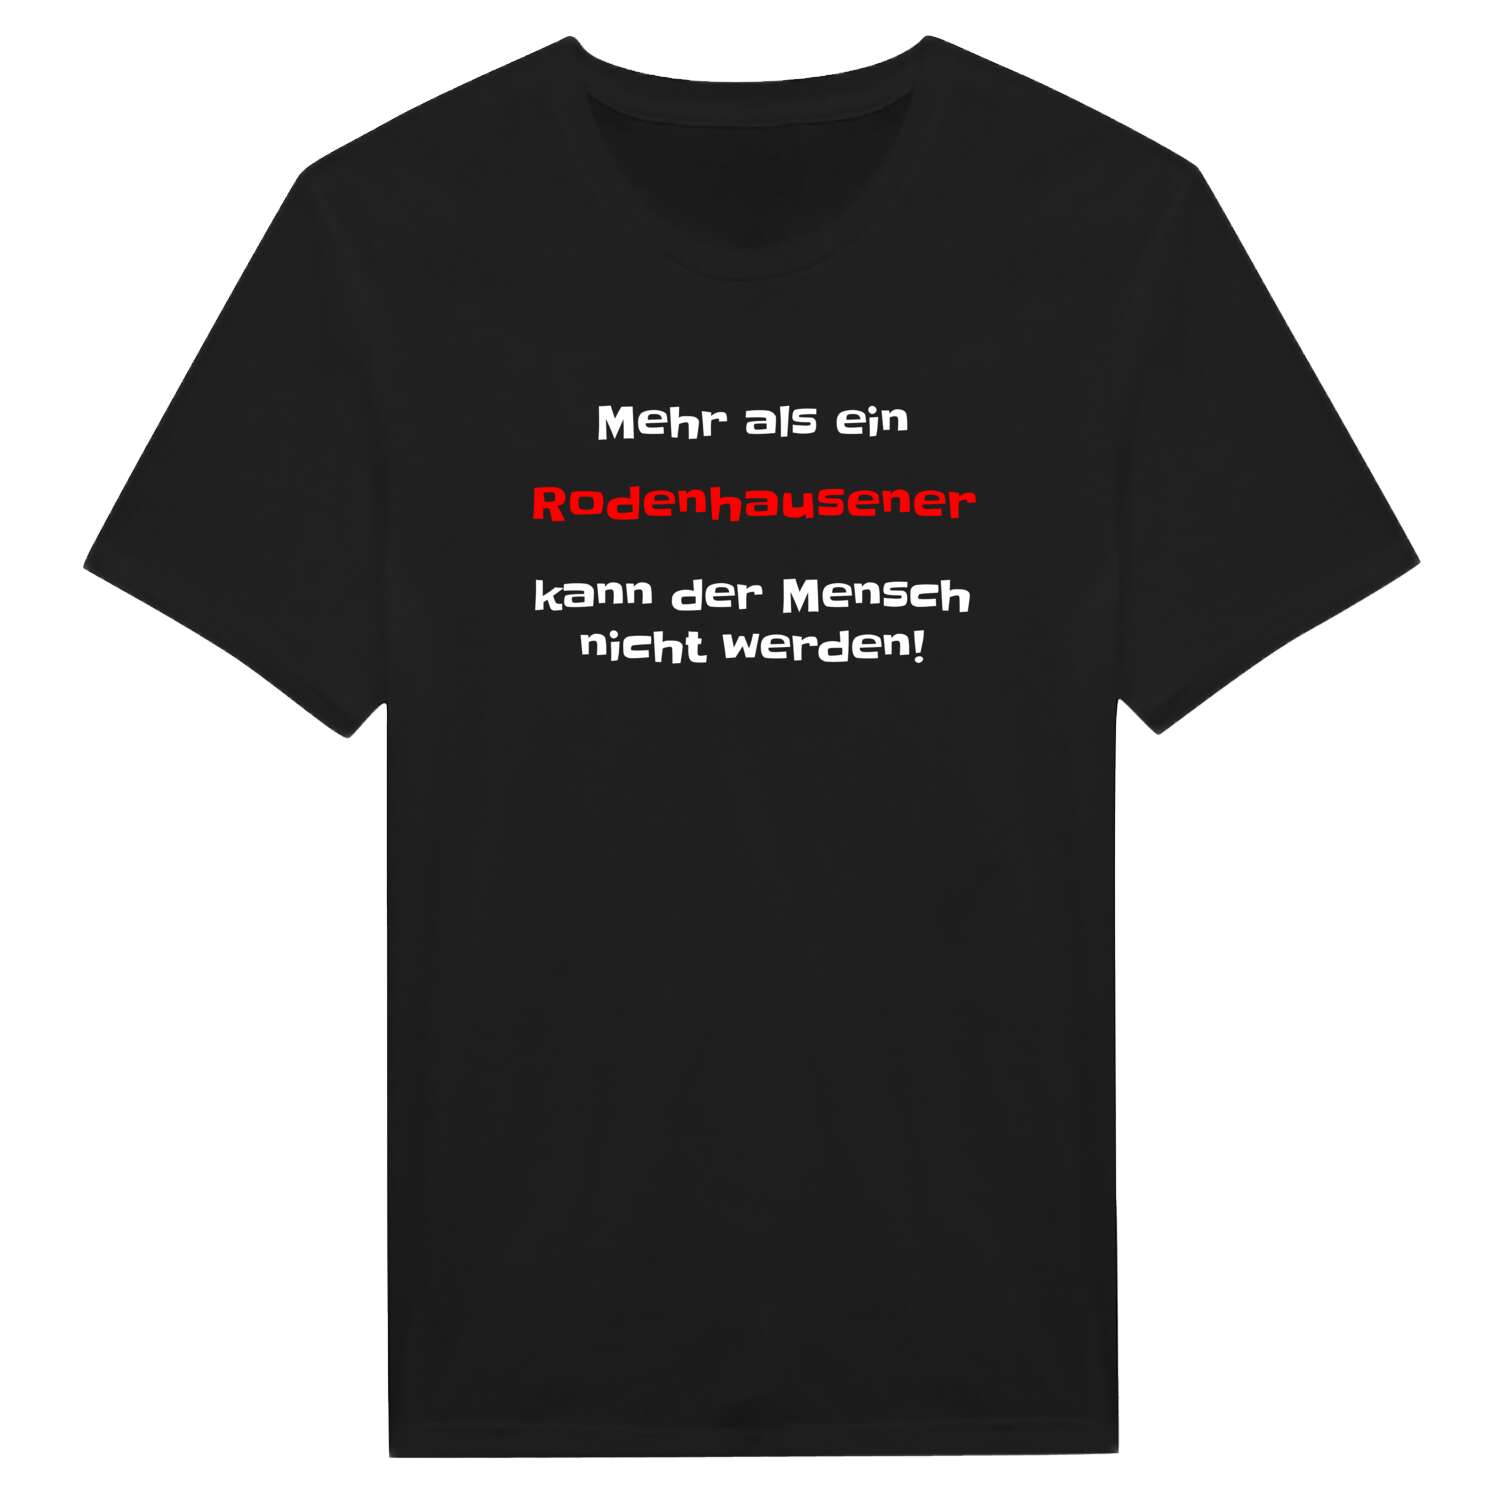 Rodenhausen T-Shirt »Mehr als ein«